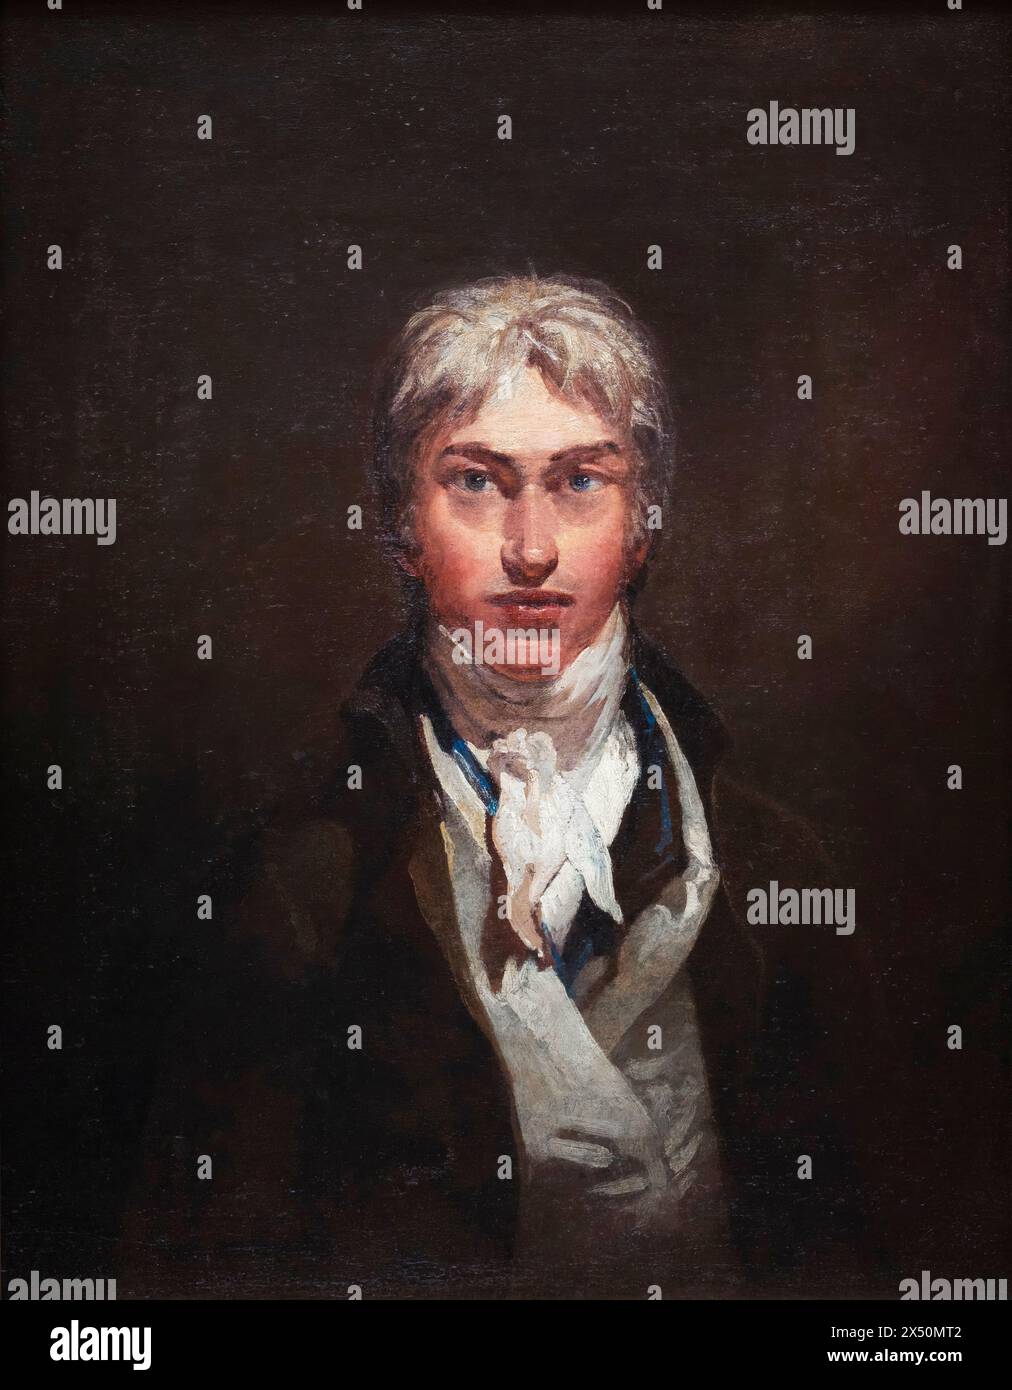 Joseph Mallord William Turner (1775-1851), Autoportrait du peintre romantique anglais JMW Turner, huile sur toile vers 1799 Banque D'Images